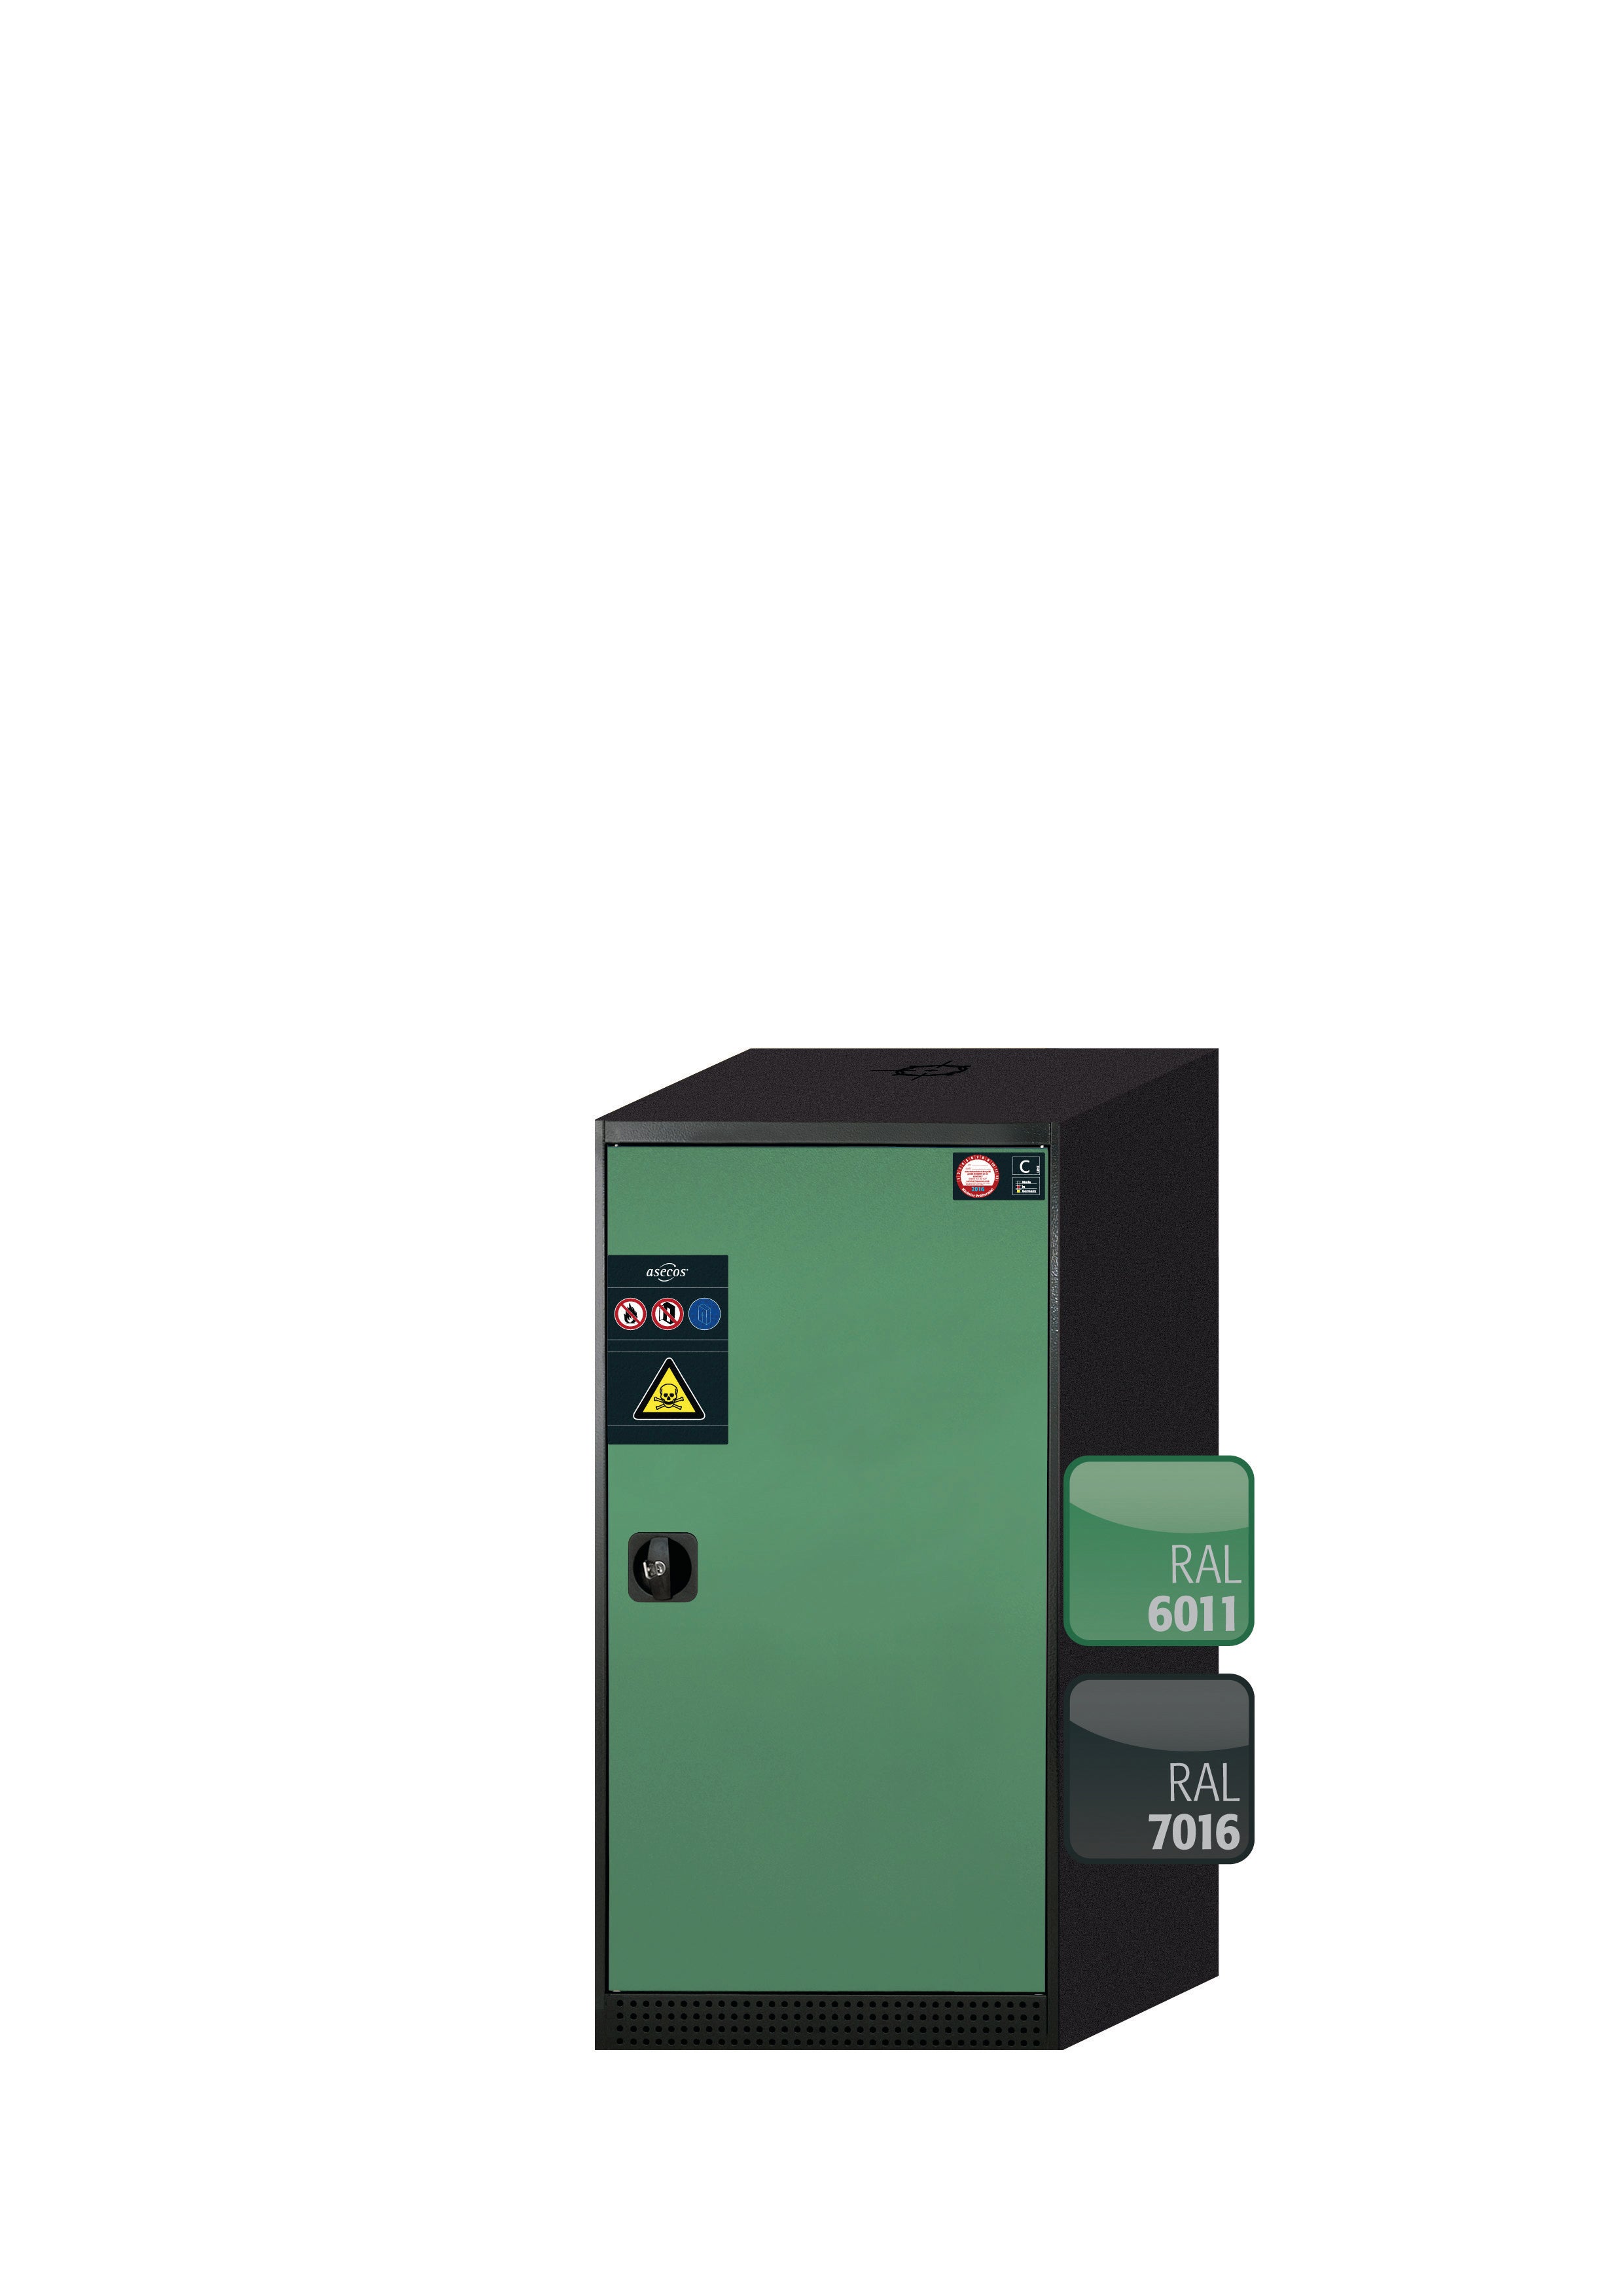 Armoire chimique CS-CLASSIC modèle CS.110.054.R en vert réséda RAL 6011 avec 3 étagères coulissantes AbZ (tôle d'acier/polypropylène)